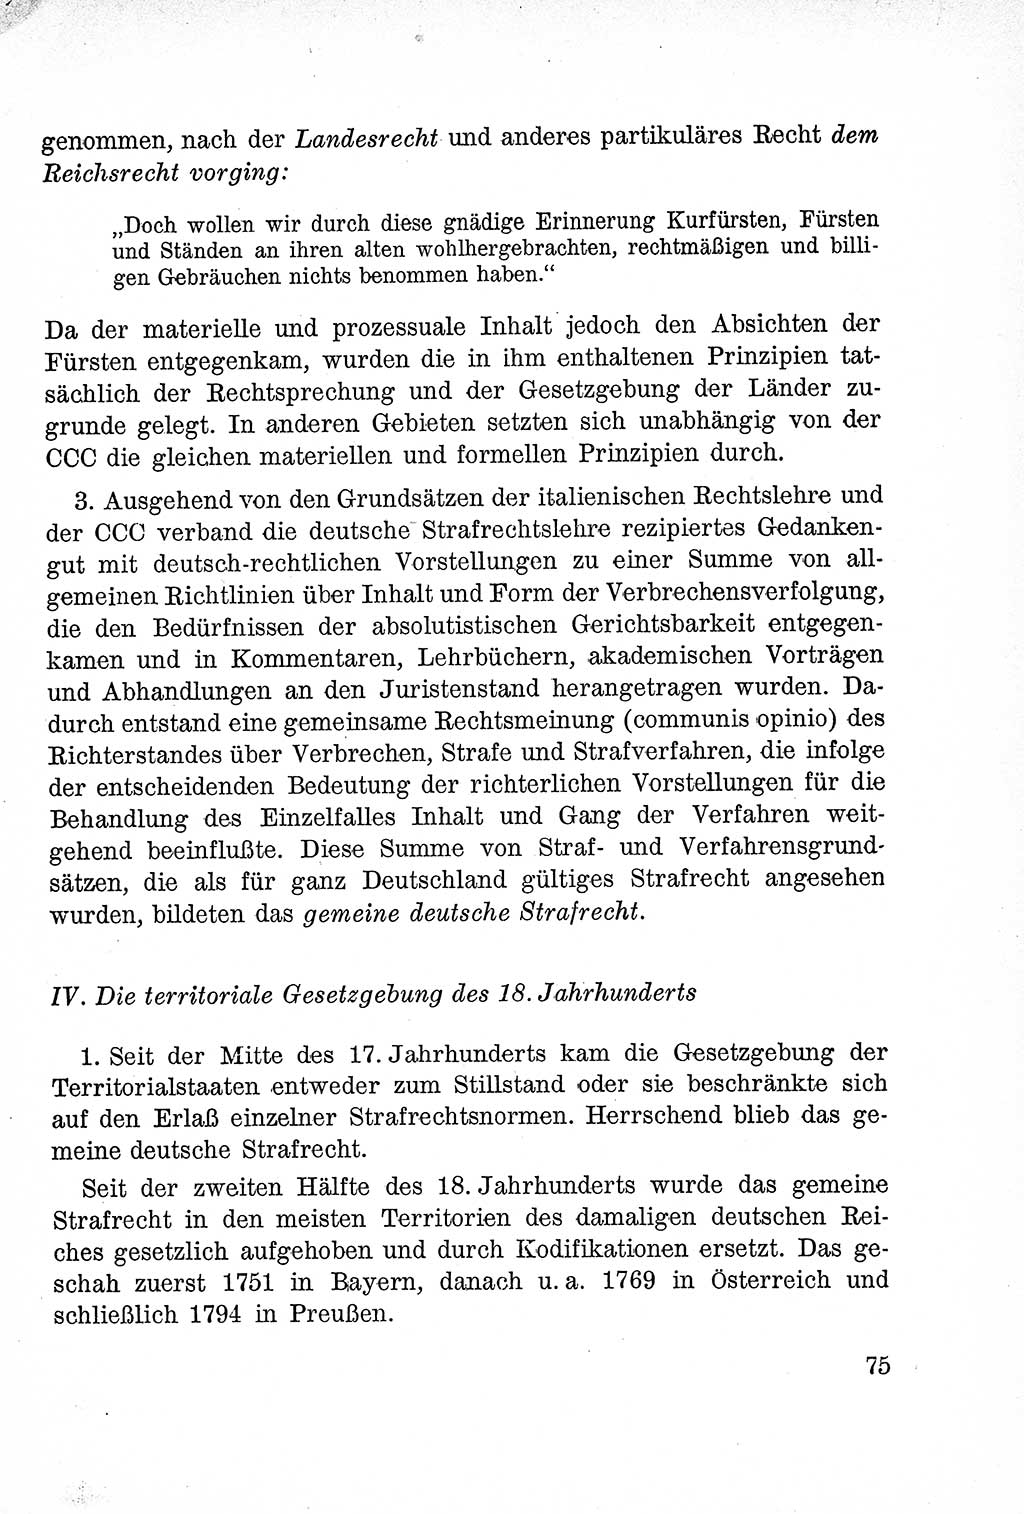 Lehrbuch des Strafrechts der Deutschen Demokratischen Republik (DDR), Allgemeiner Teil 1957, Seite 75 (Lb. Strafr. DDR AT 1957, S. 75)